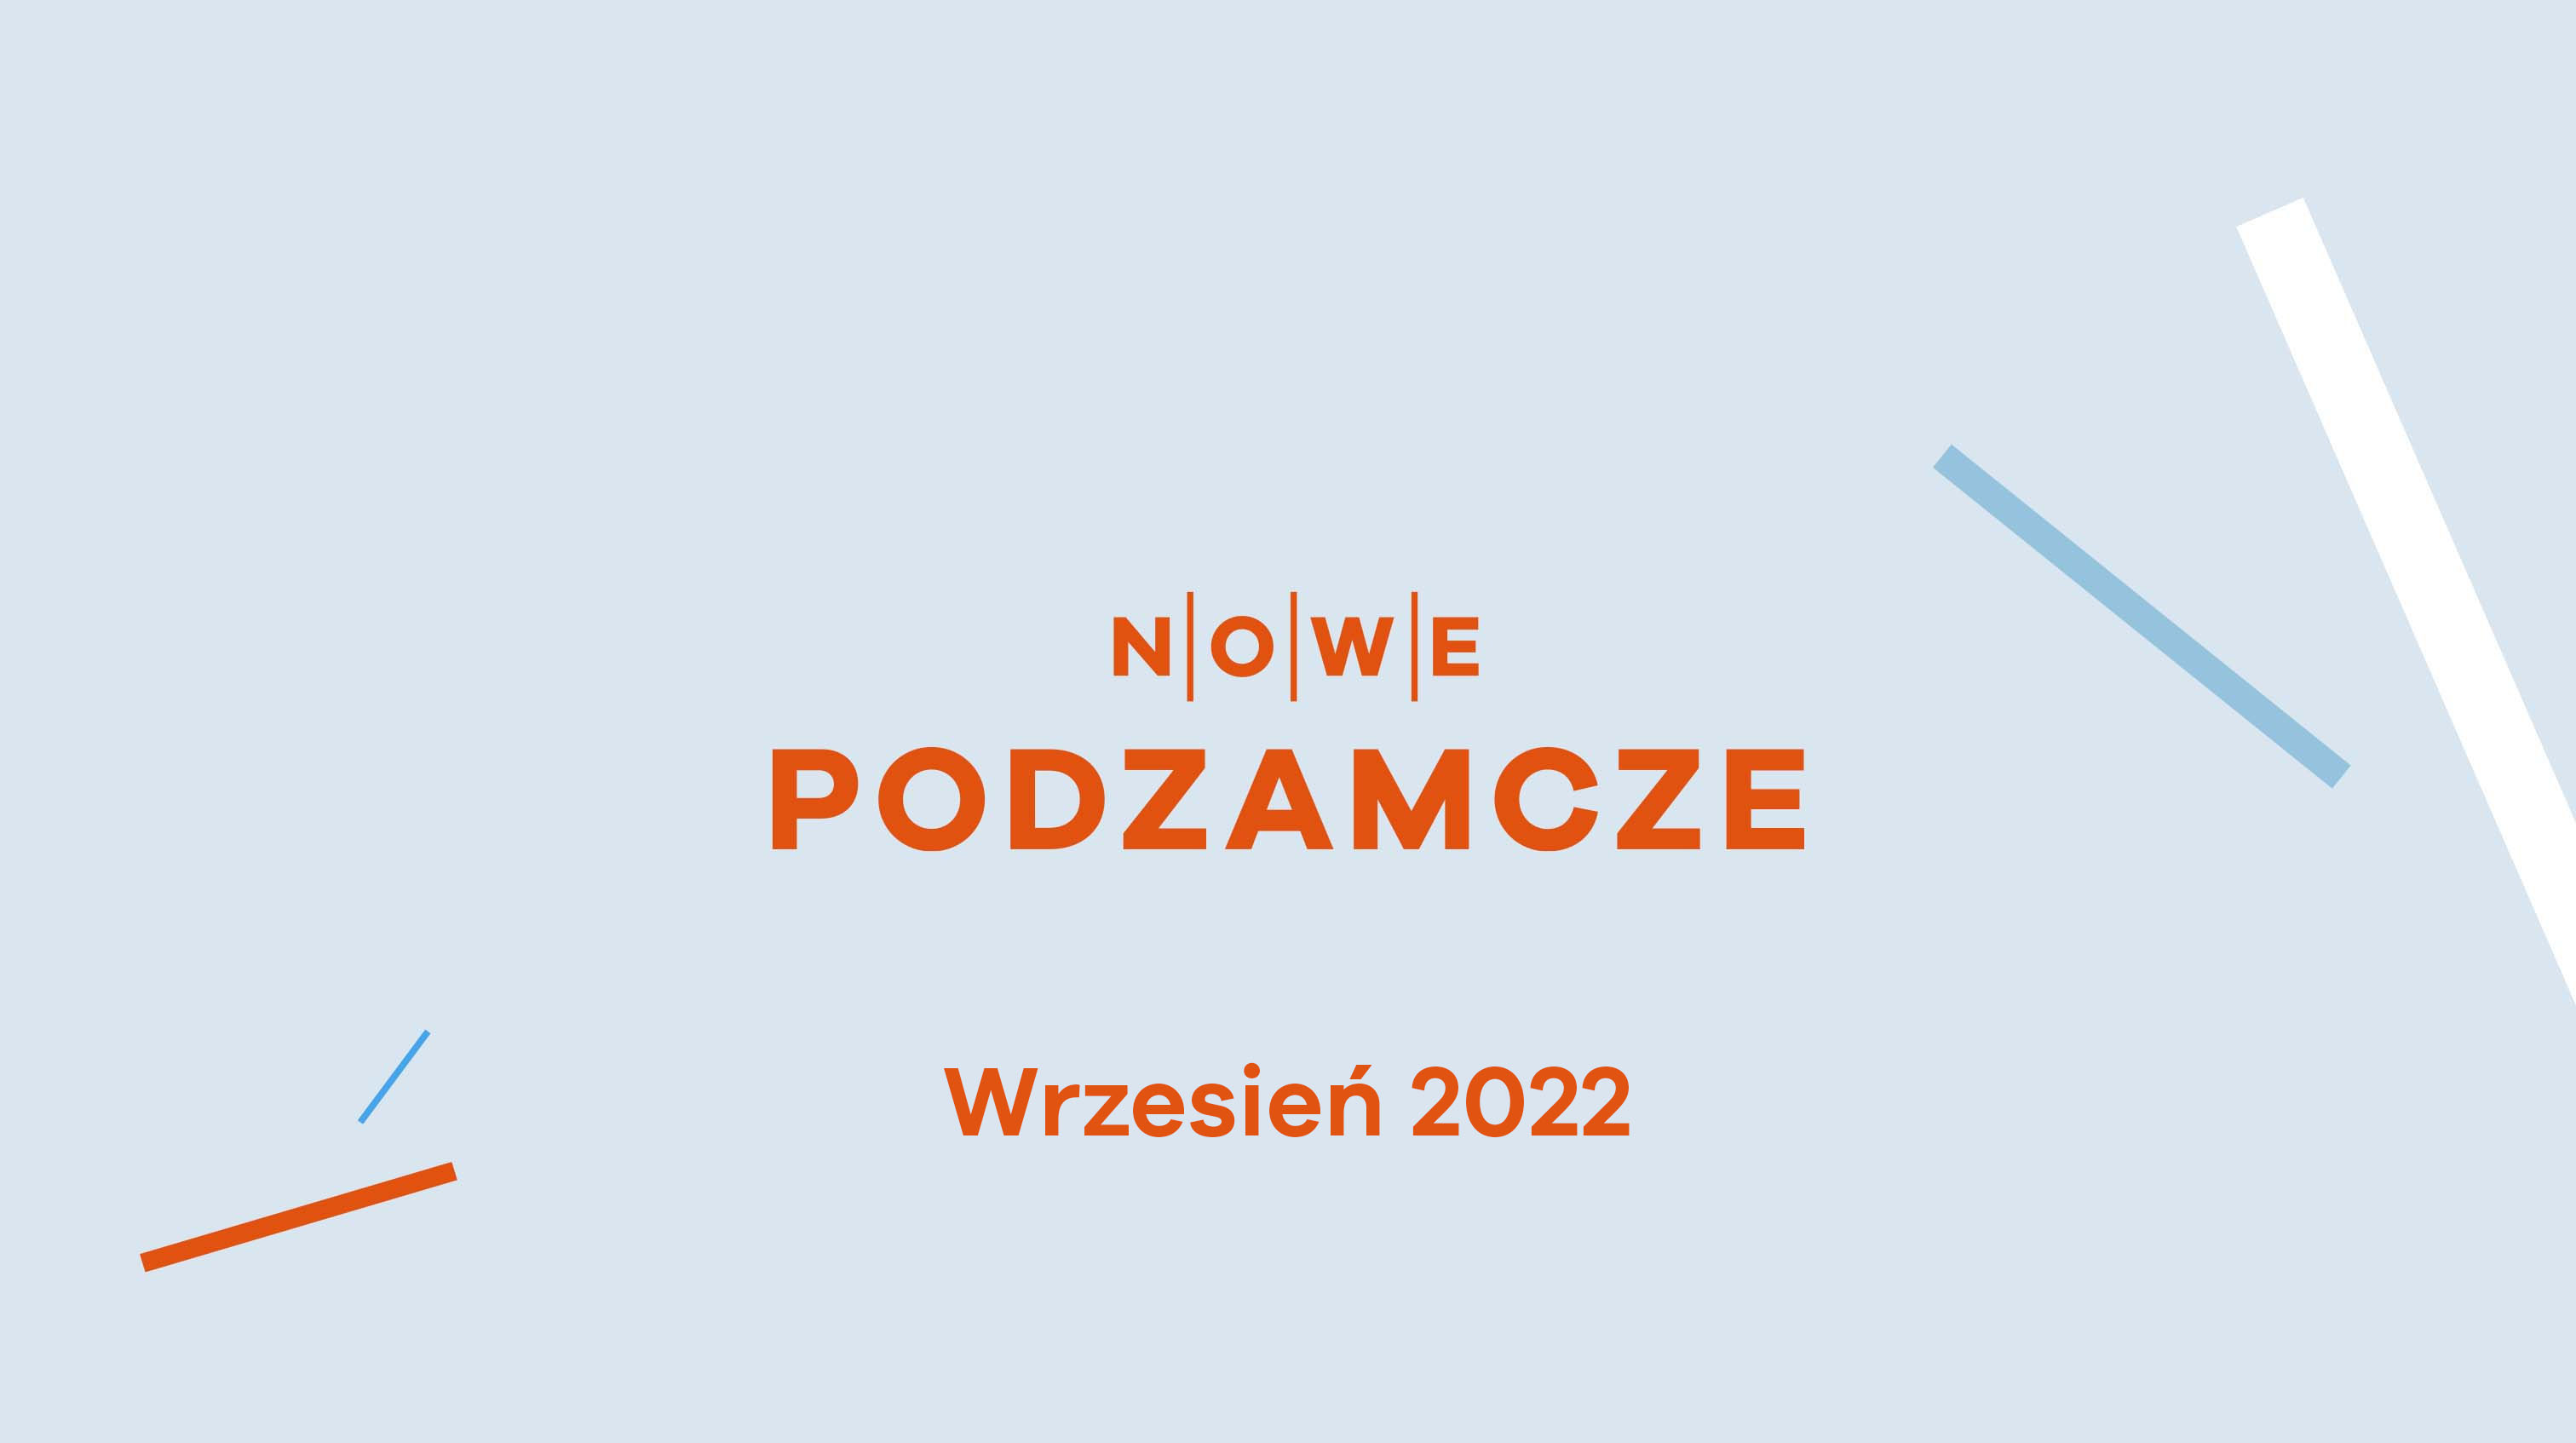 Nowe Podzamcze, Dziennik budowy - Nowe Podzamcze w Wałbrzychu - lipiec 2022